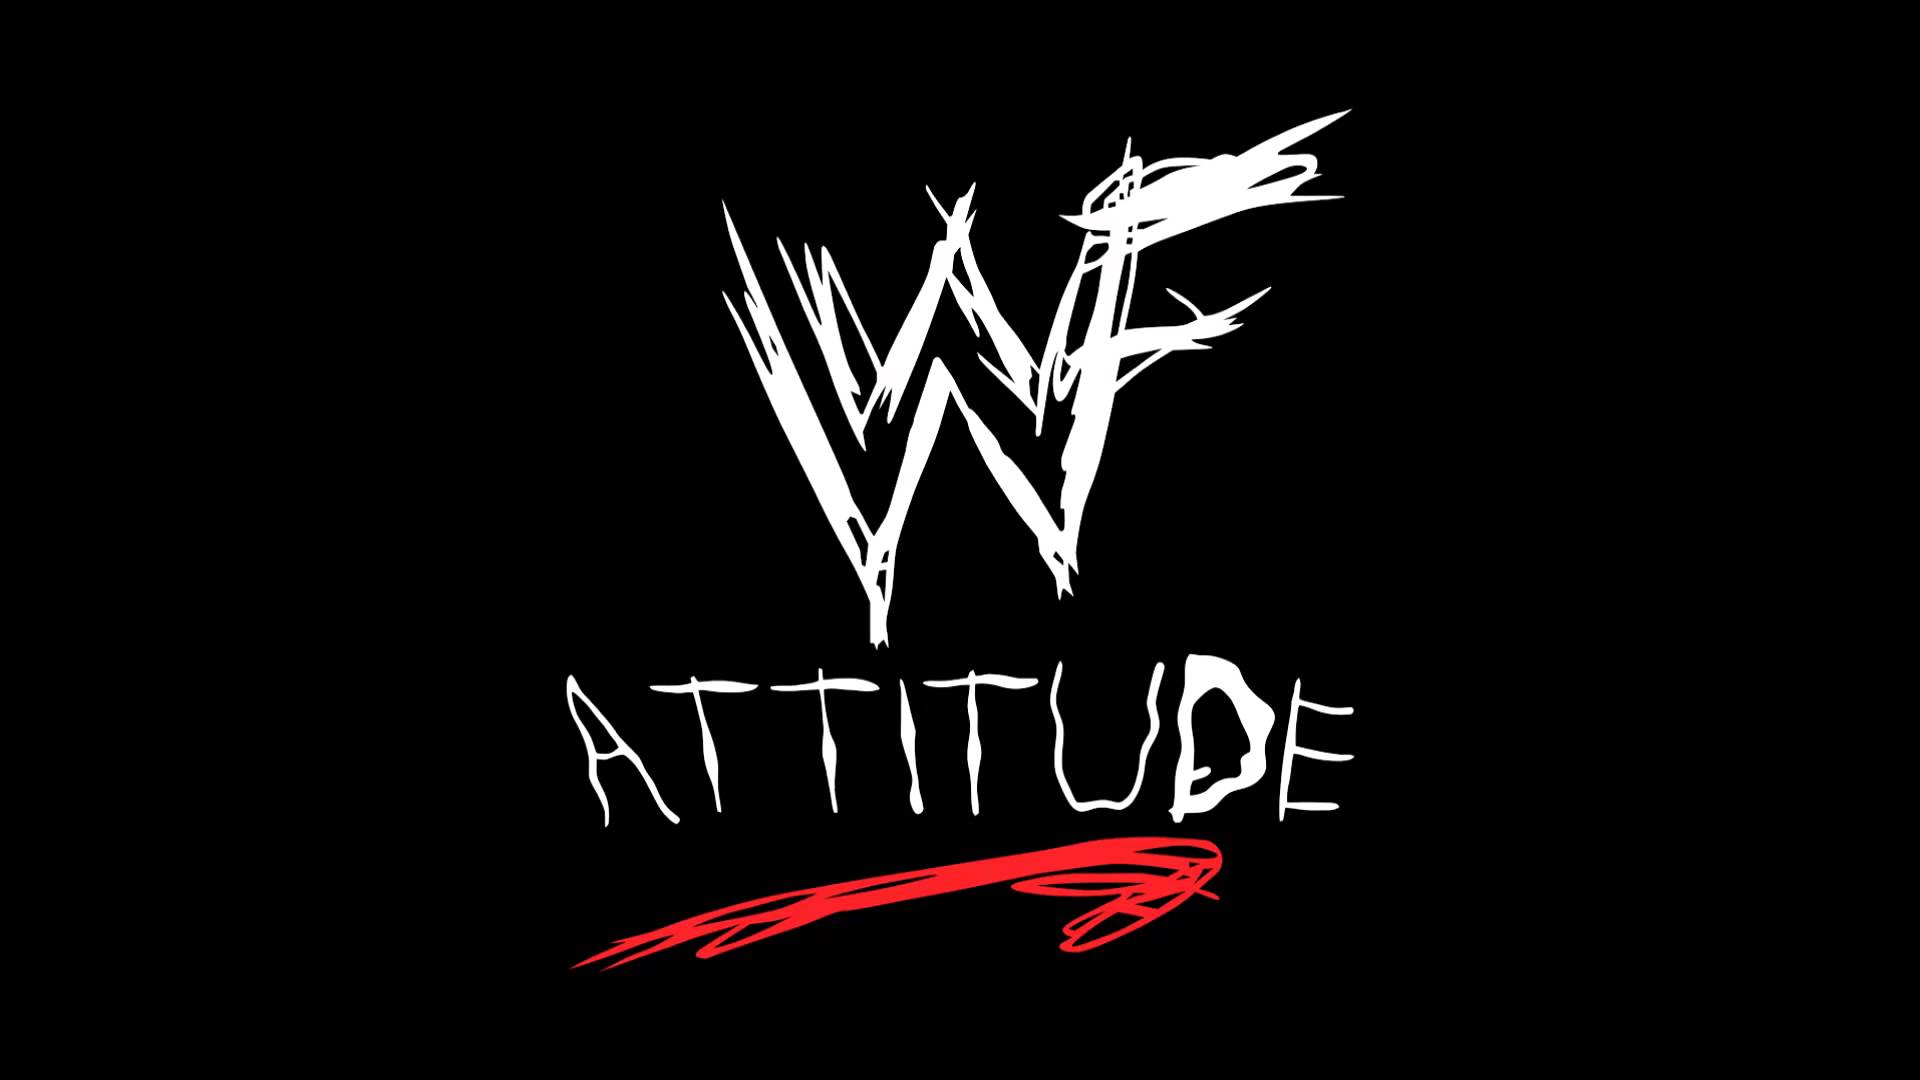 WWF Attitude Logo by JDWinkerman on DeviantArt